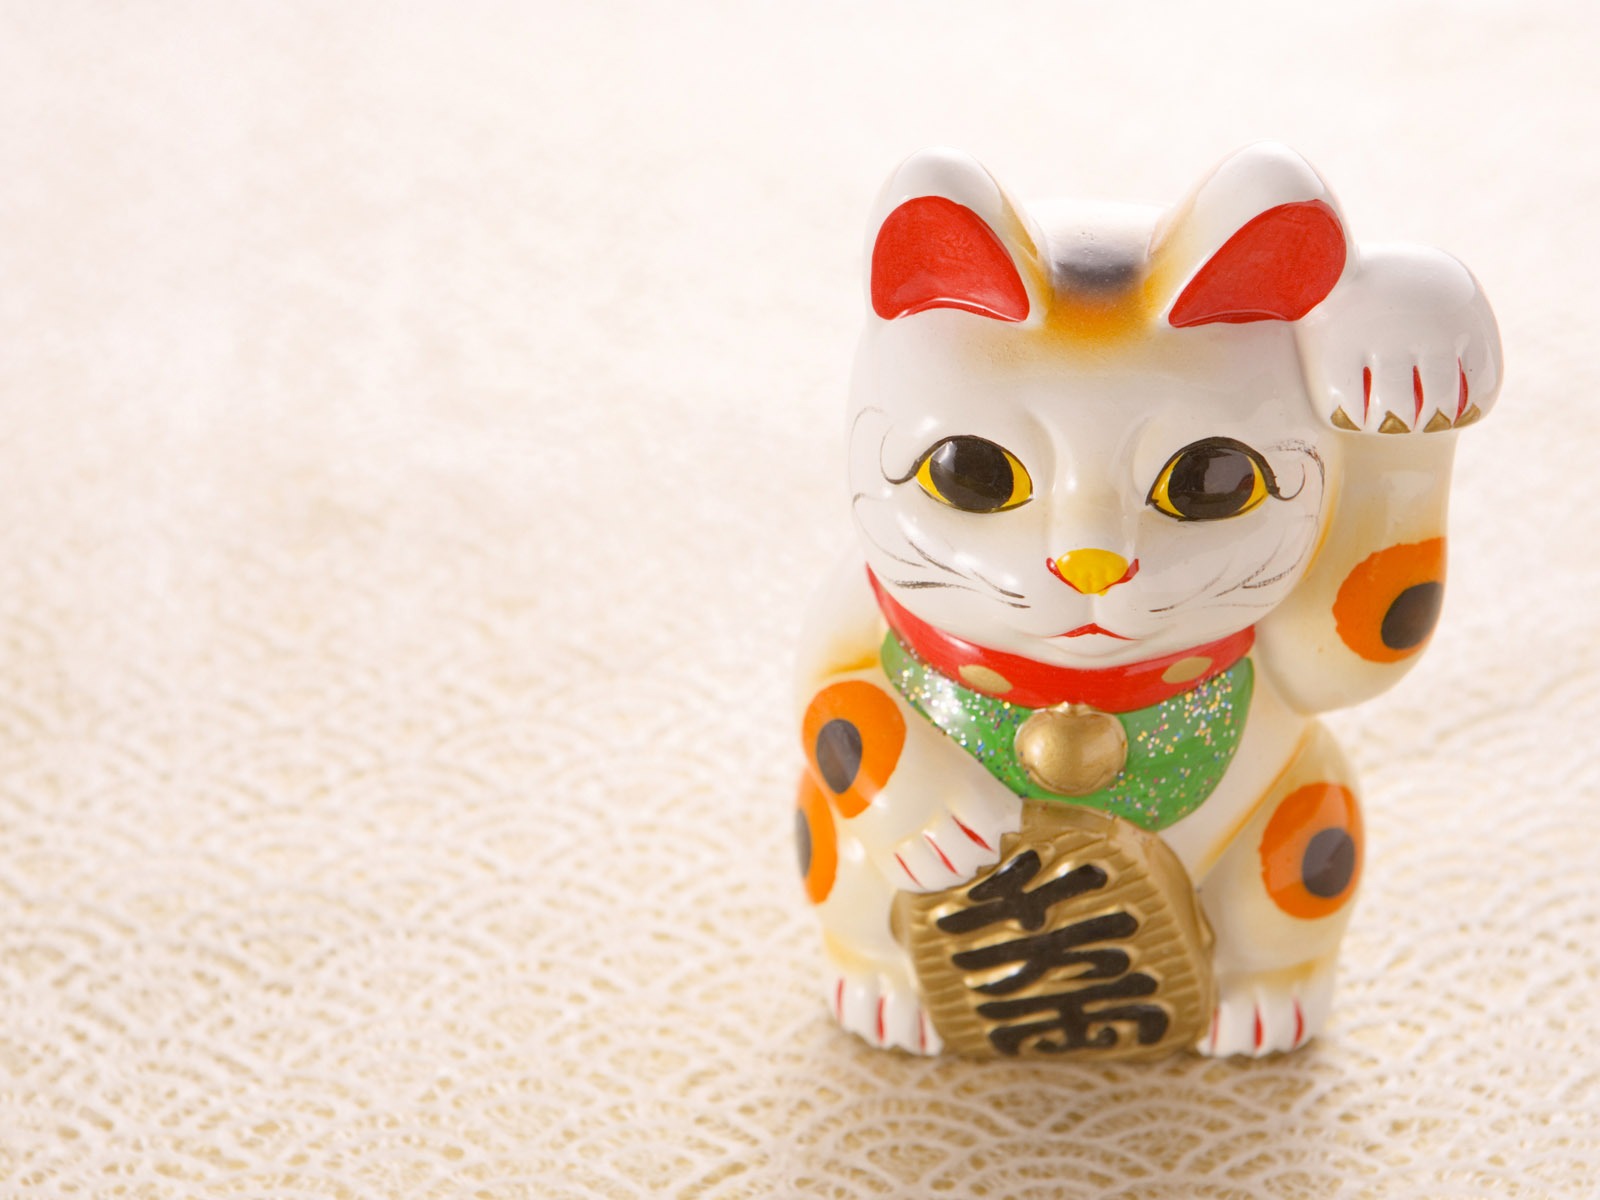 Fondos de año nuevo japonés Cultura (3) #20 - 1600x1200